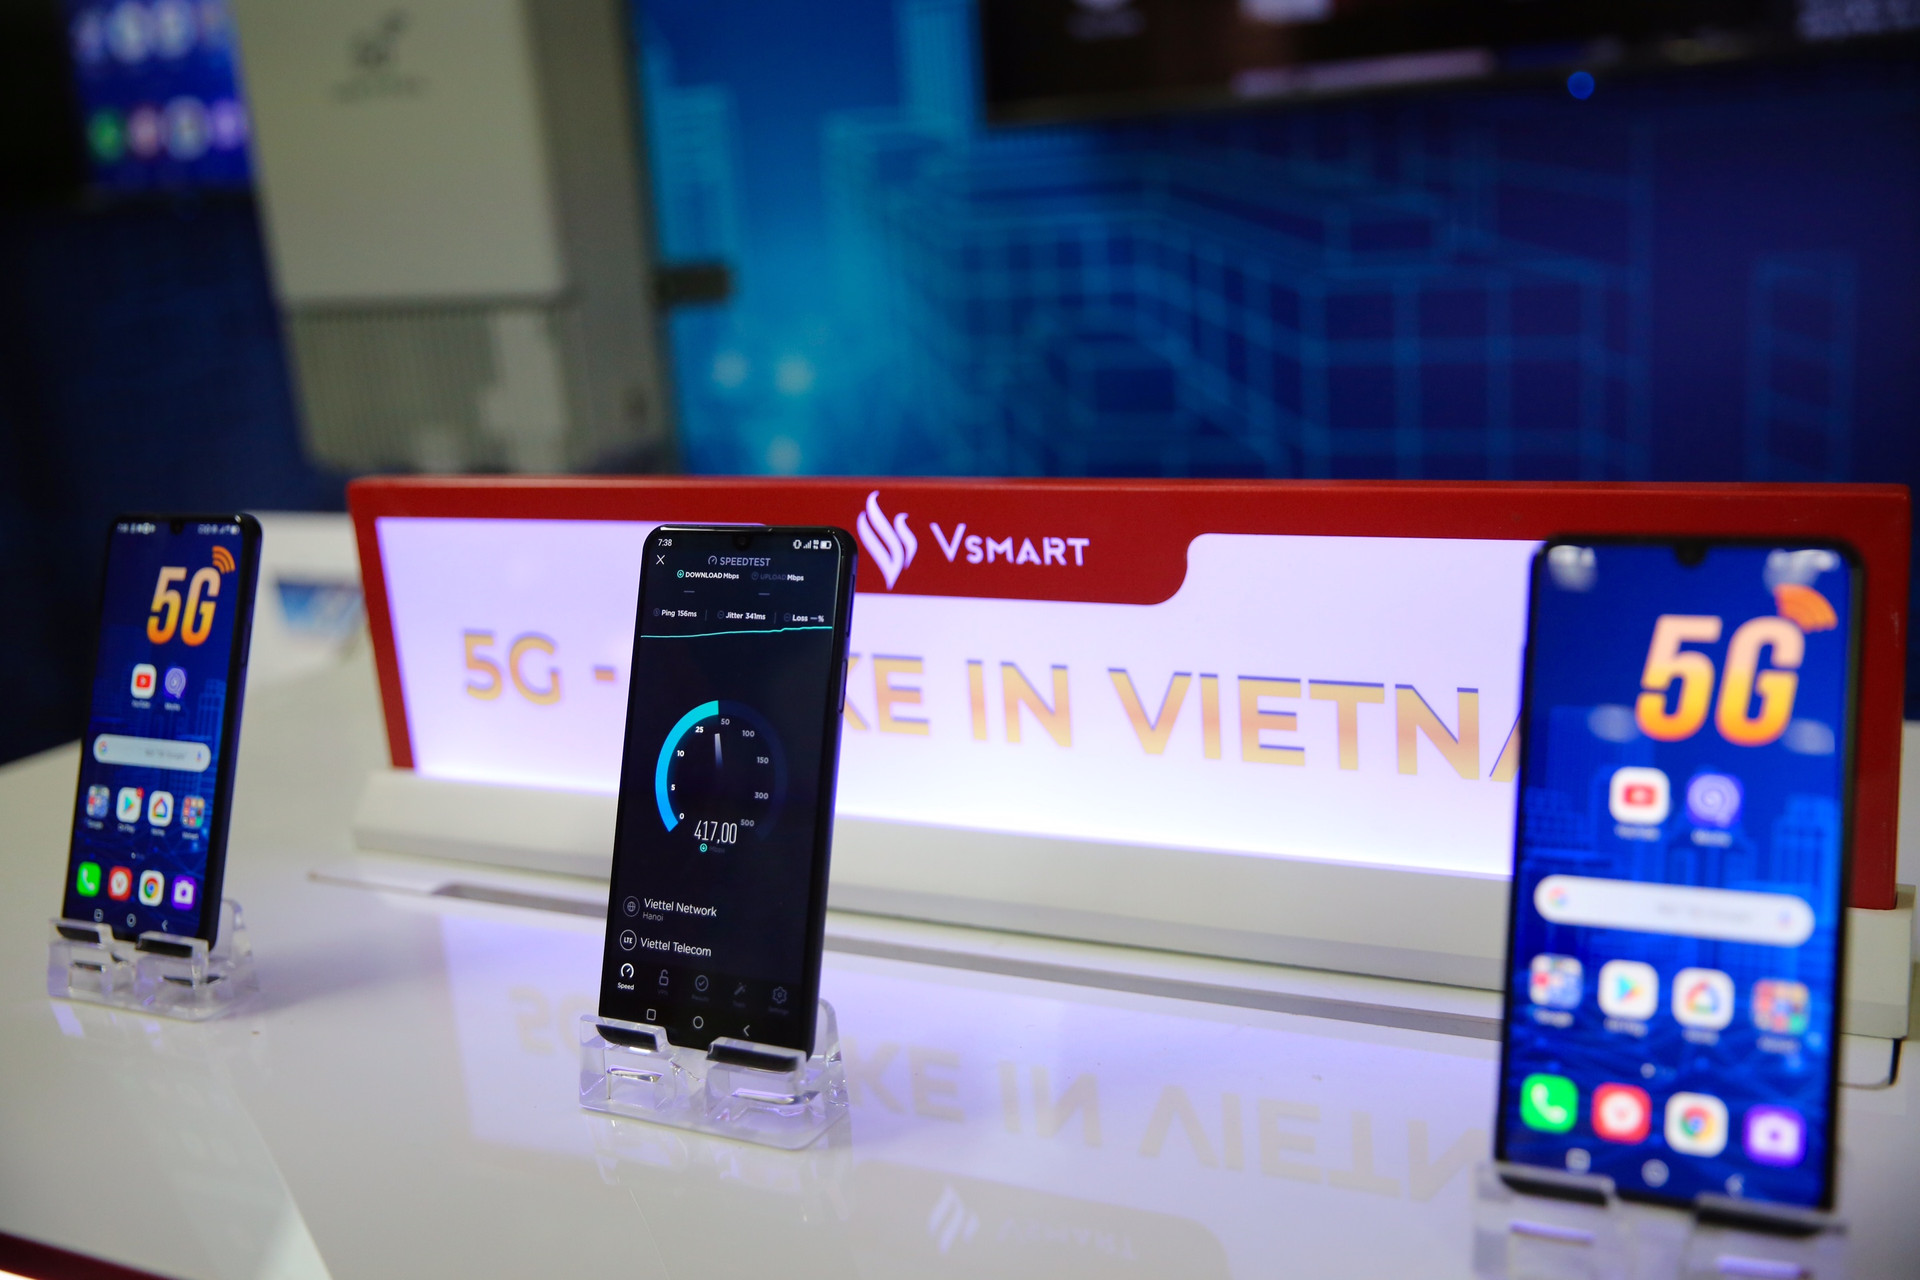 Vinsmart phát triển thành công điện thoại 5G